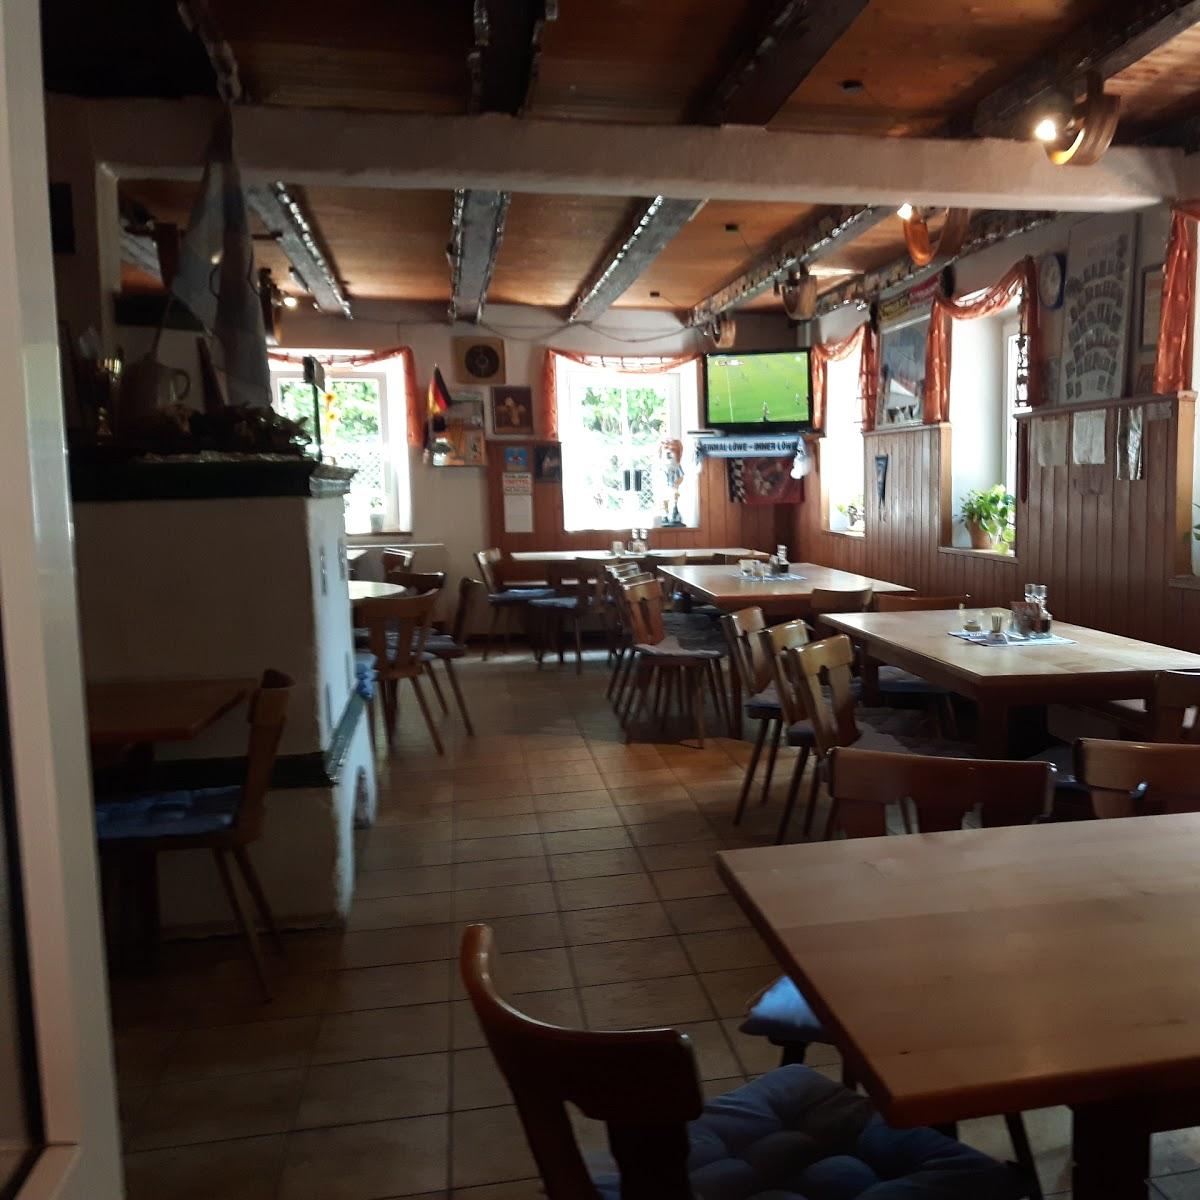 Restaurant "Gasthaus Zur nuß" in  Waal